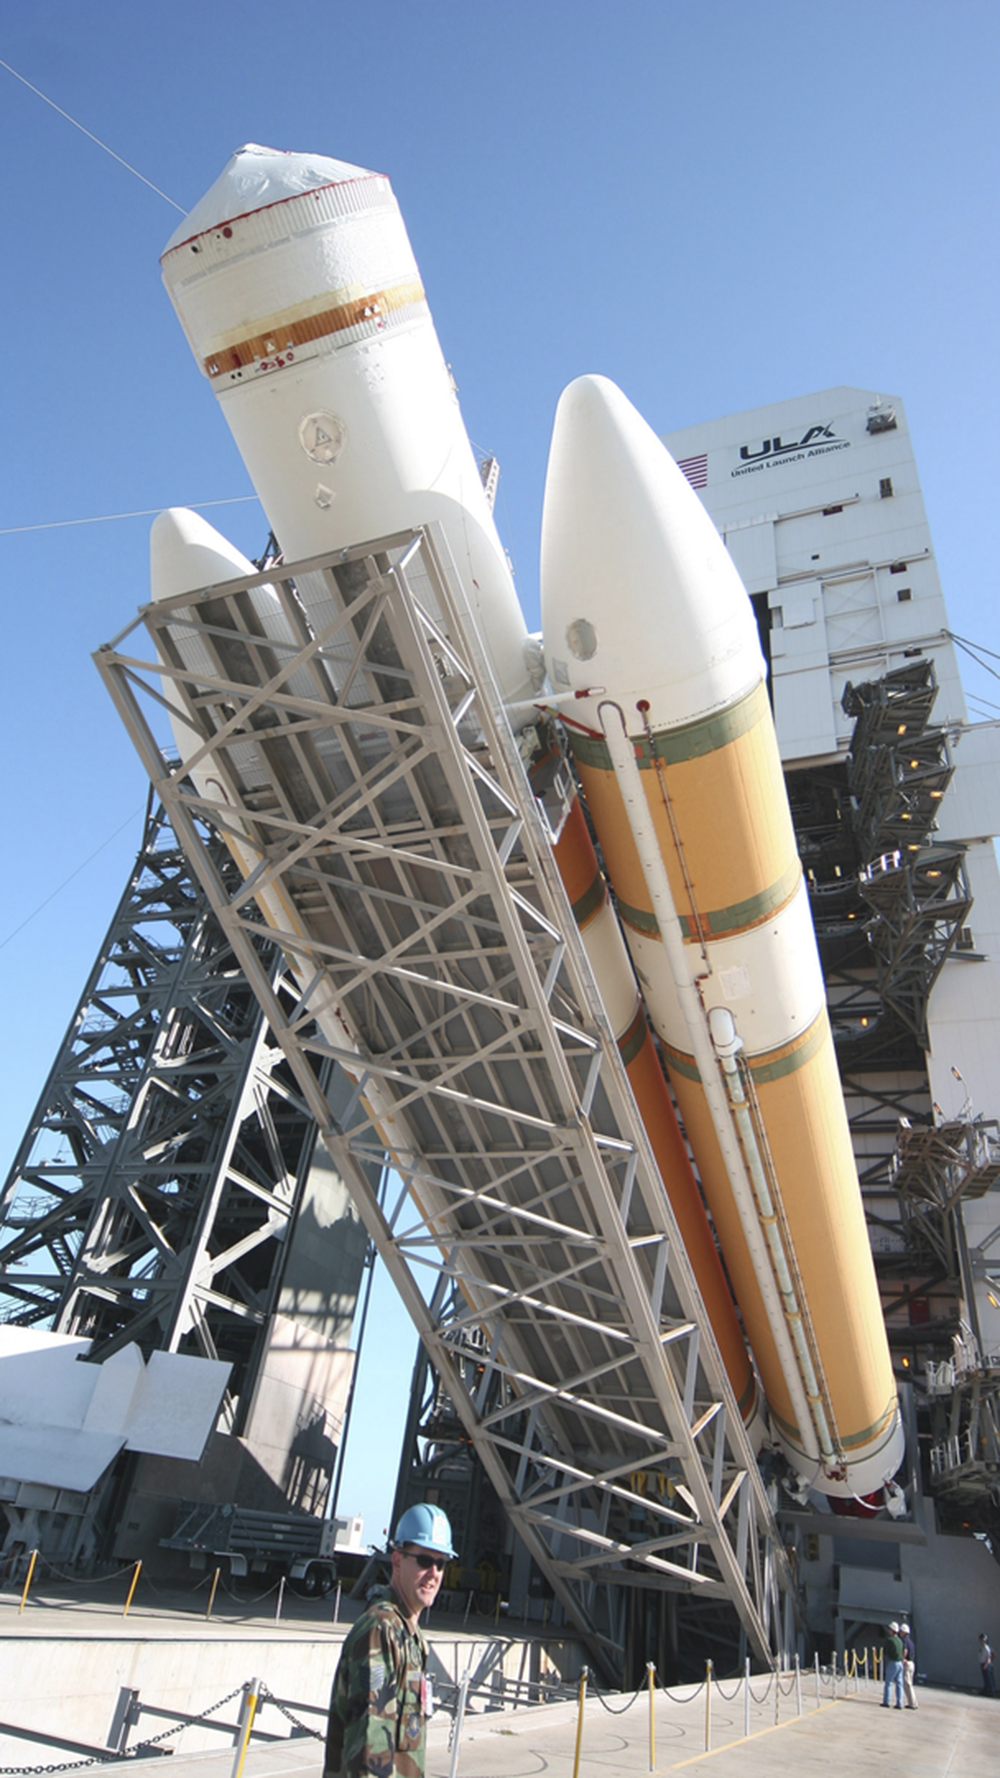 orange and white ULA rocket on raising white launch pad